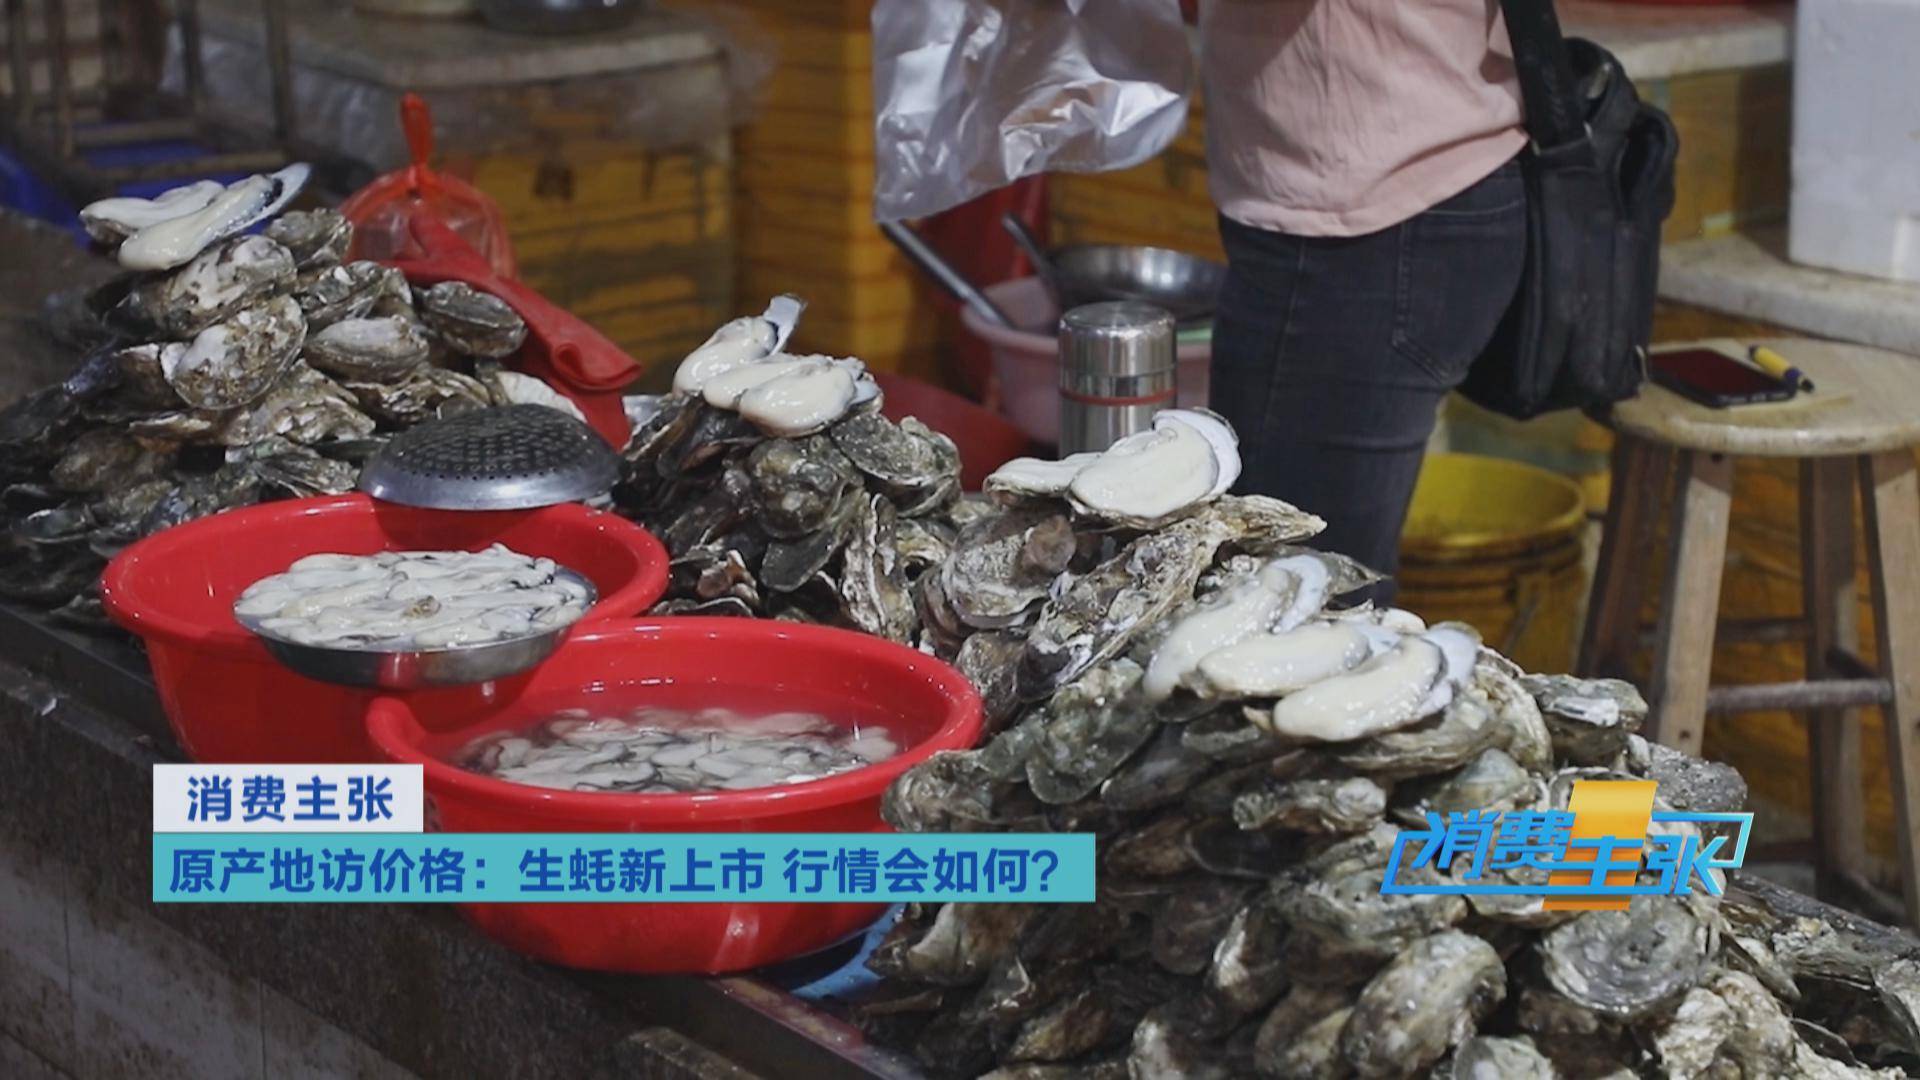 专业水产品市场之一的湛江霞山水产品批发市场,一只只肥美的湛江生蚝